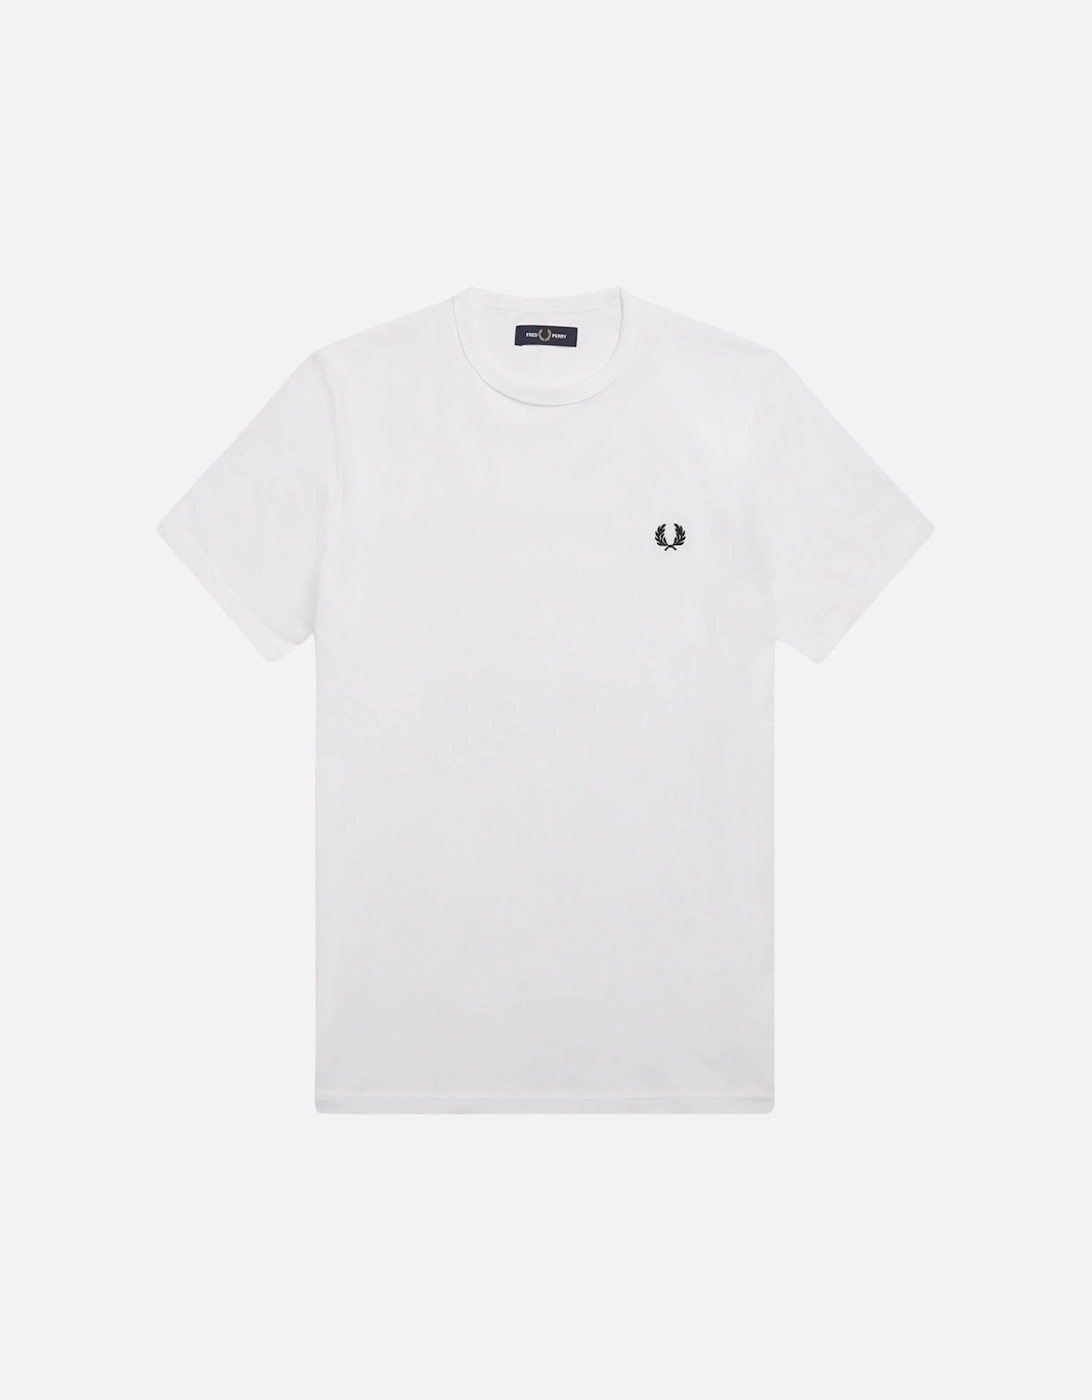 Ringer T-Shirt - White, 3 of 2